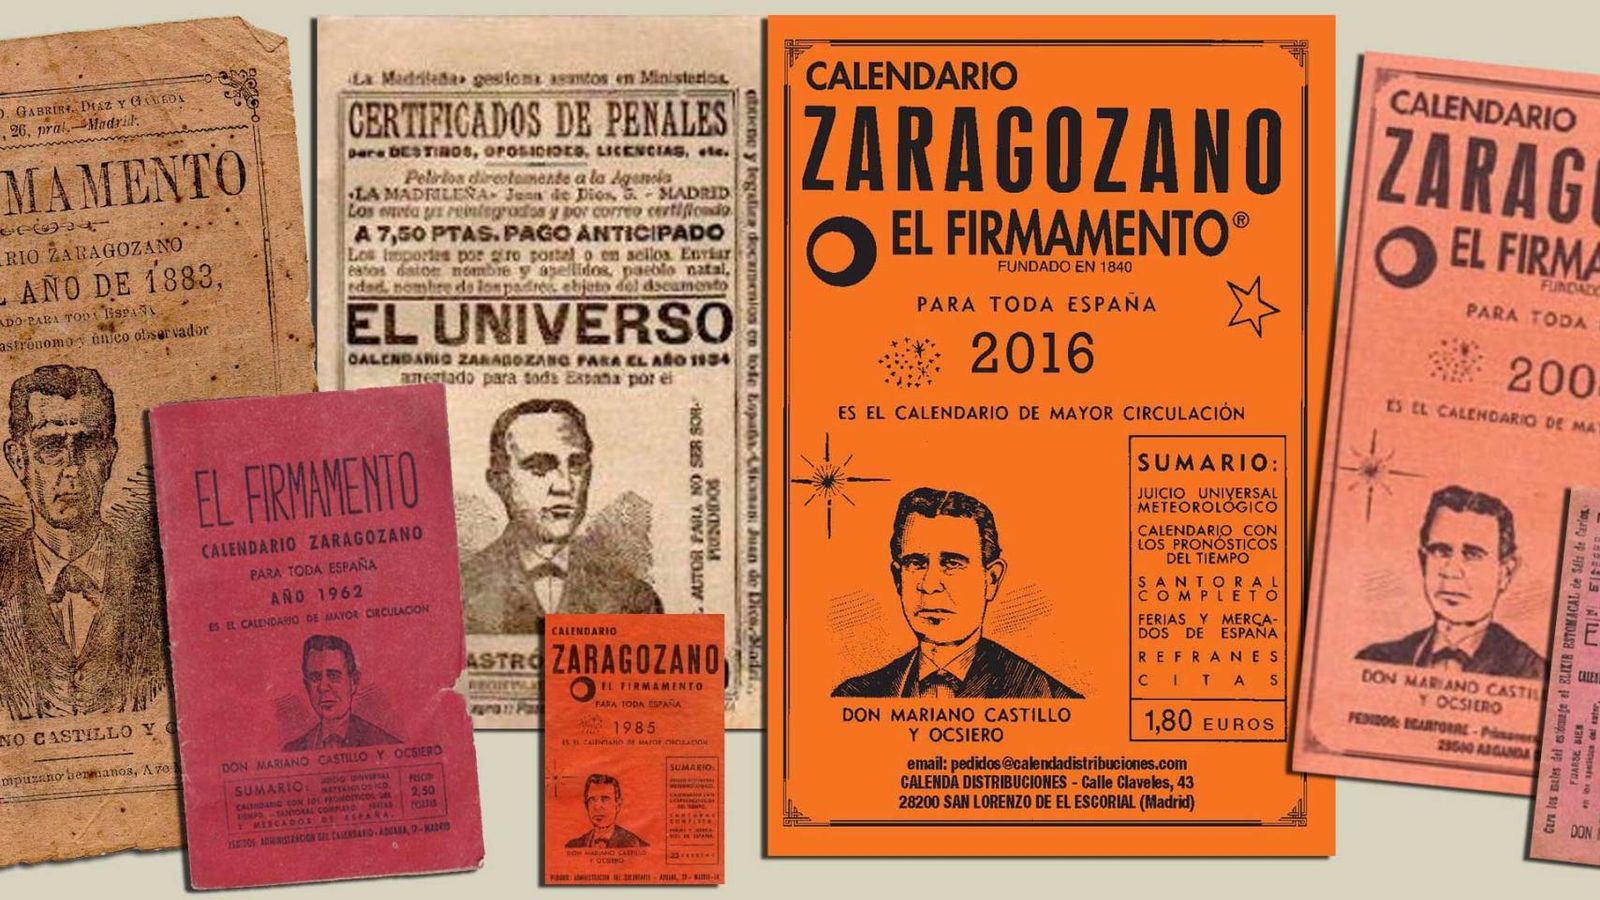 Foto: Varias ediciones de calendarios zaragozanos. (calendariozaragozano.net)